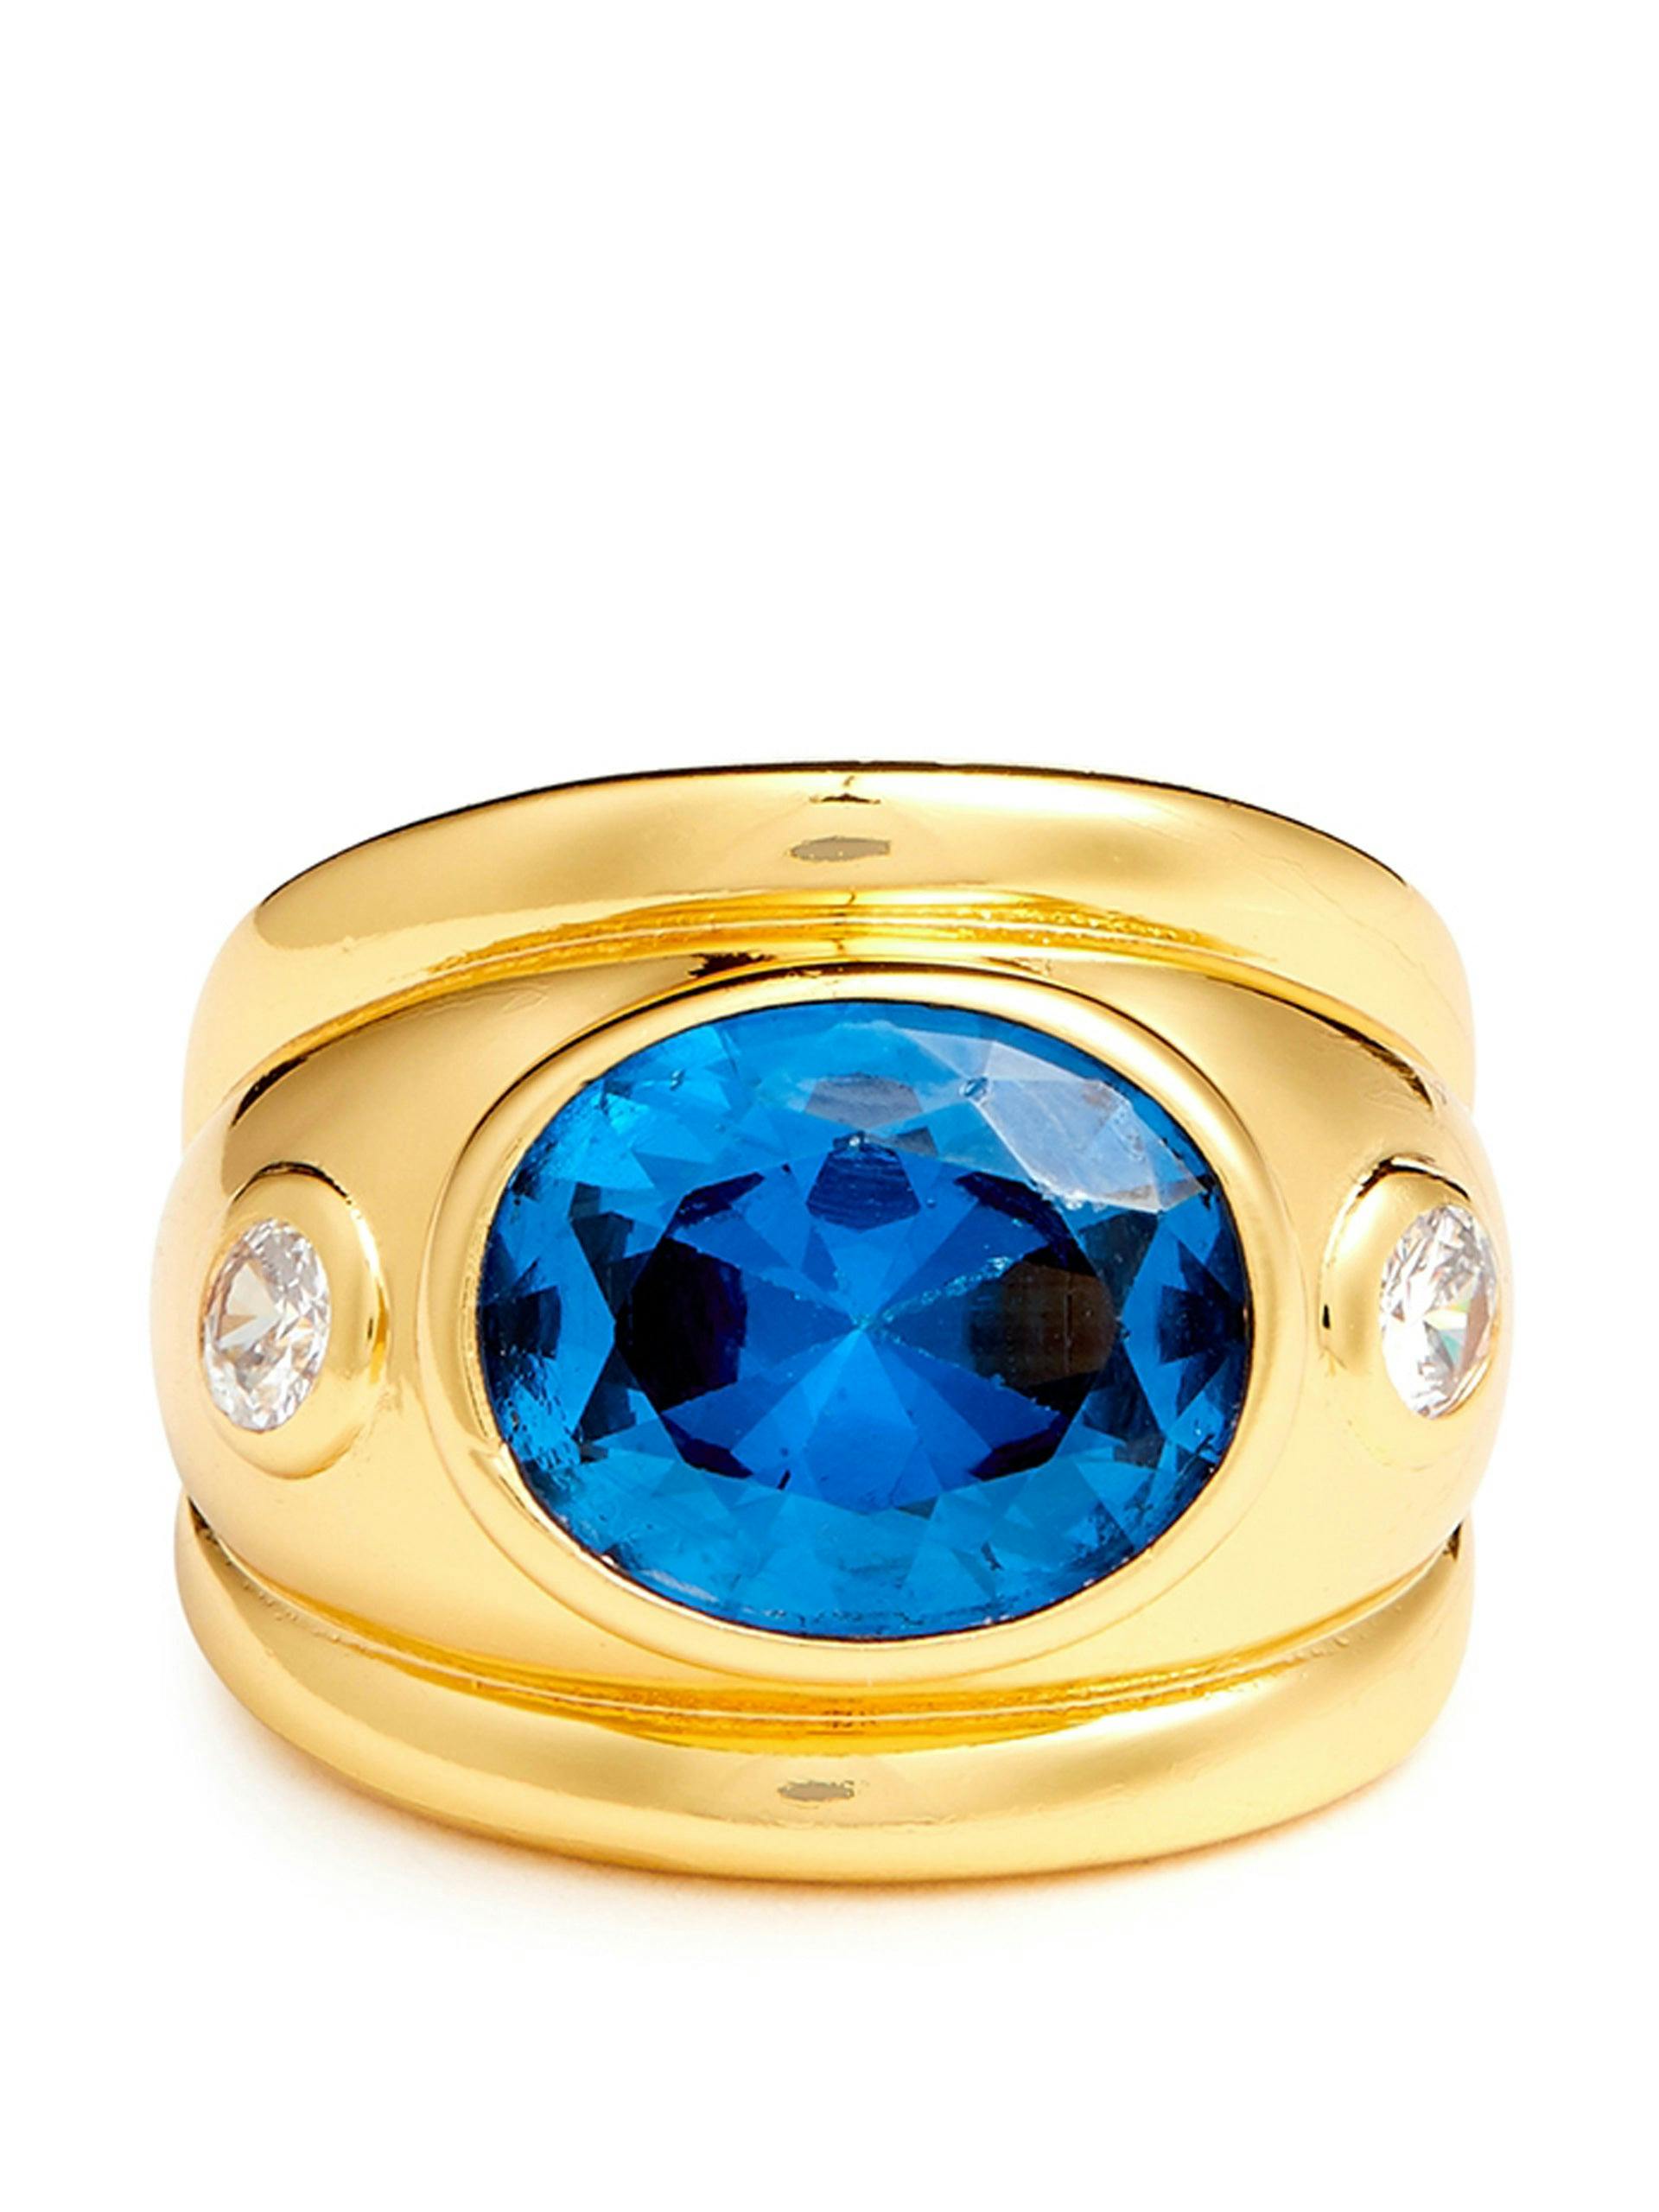 Crystal-embellished 24kt gold-plated ring